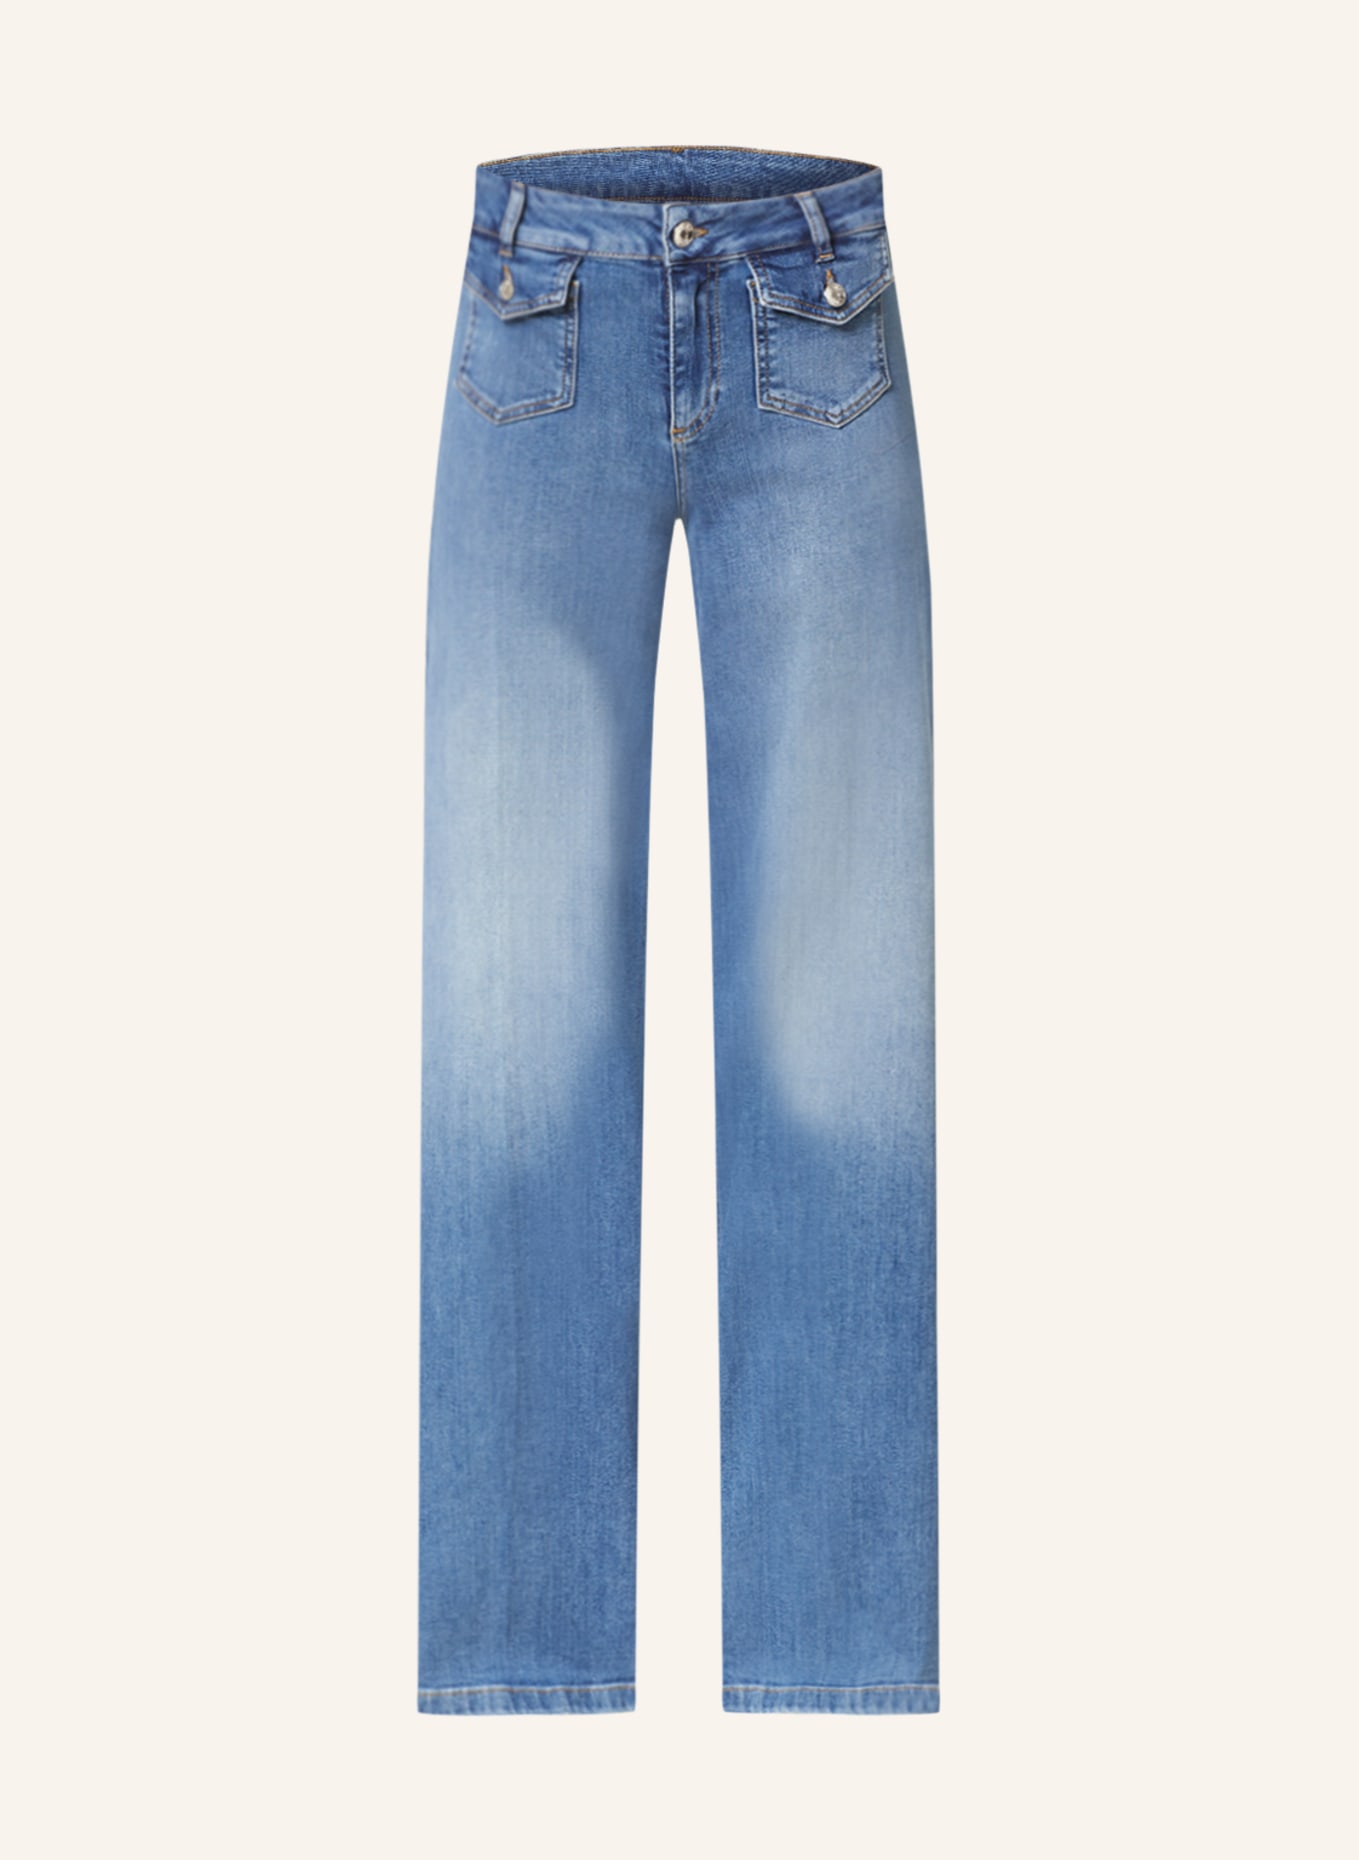 LIU JO Straight Jeans, Farbe: 77870 Denim Blue capt wash (Bild 1)